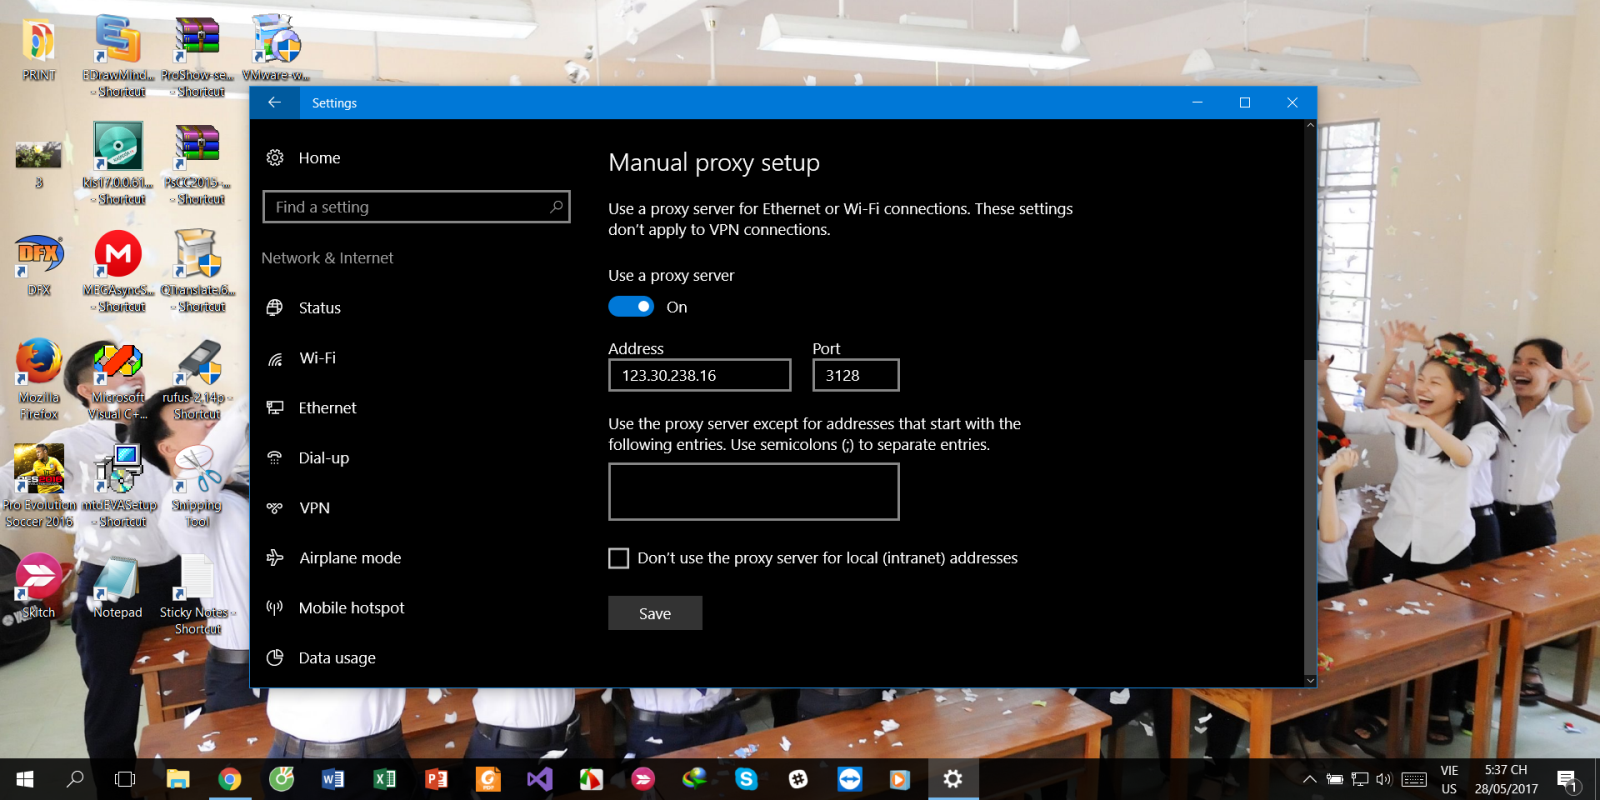 Huướng dẫn sử dụng tính năng Proxy trên Windows 10 - Ảnh 1